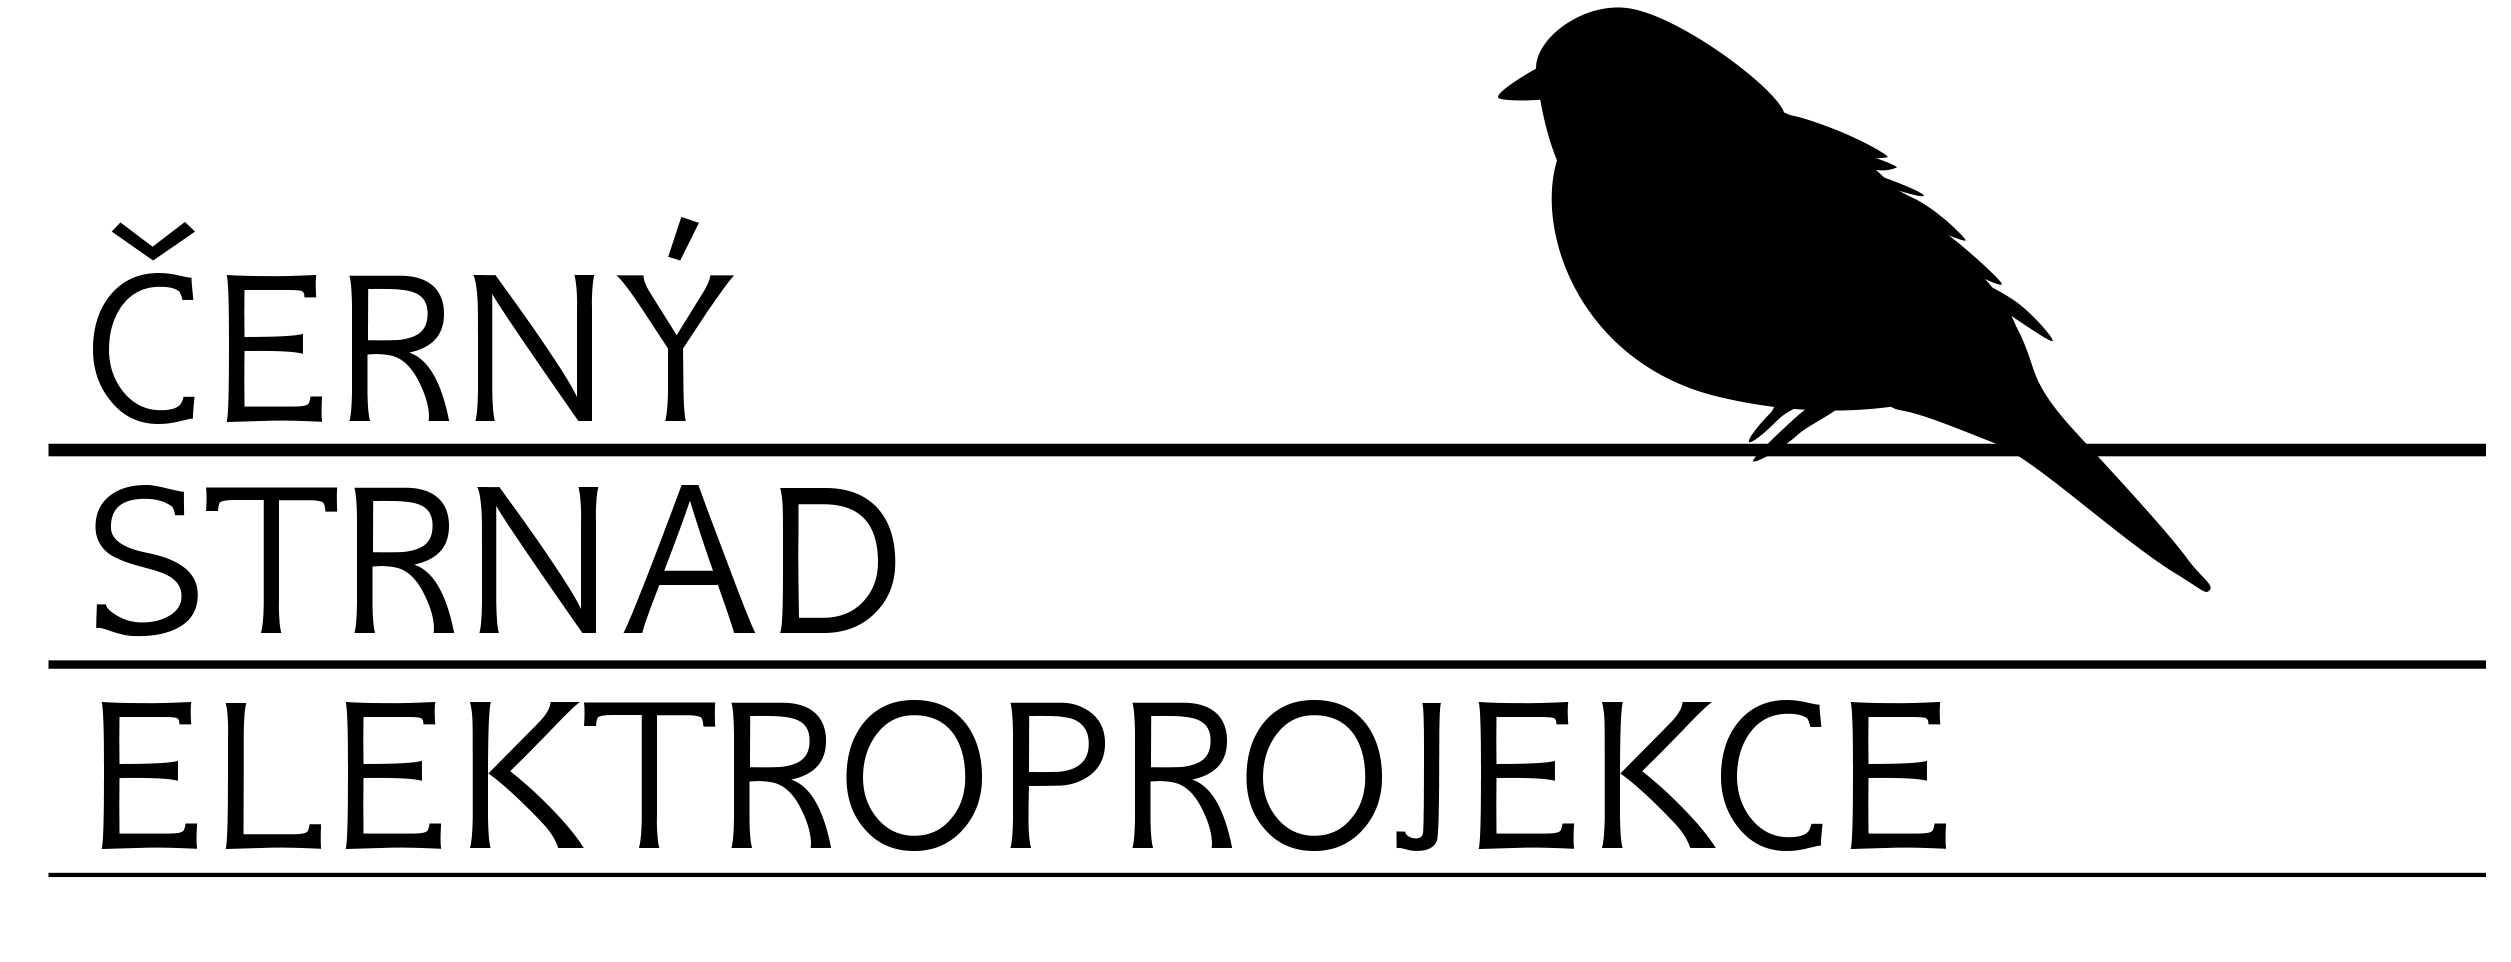 Černý Strnad - Elektroprojekce (logo)